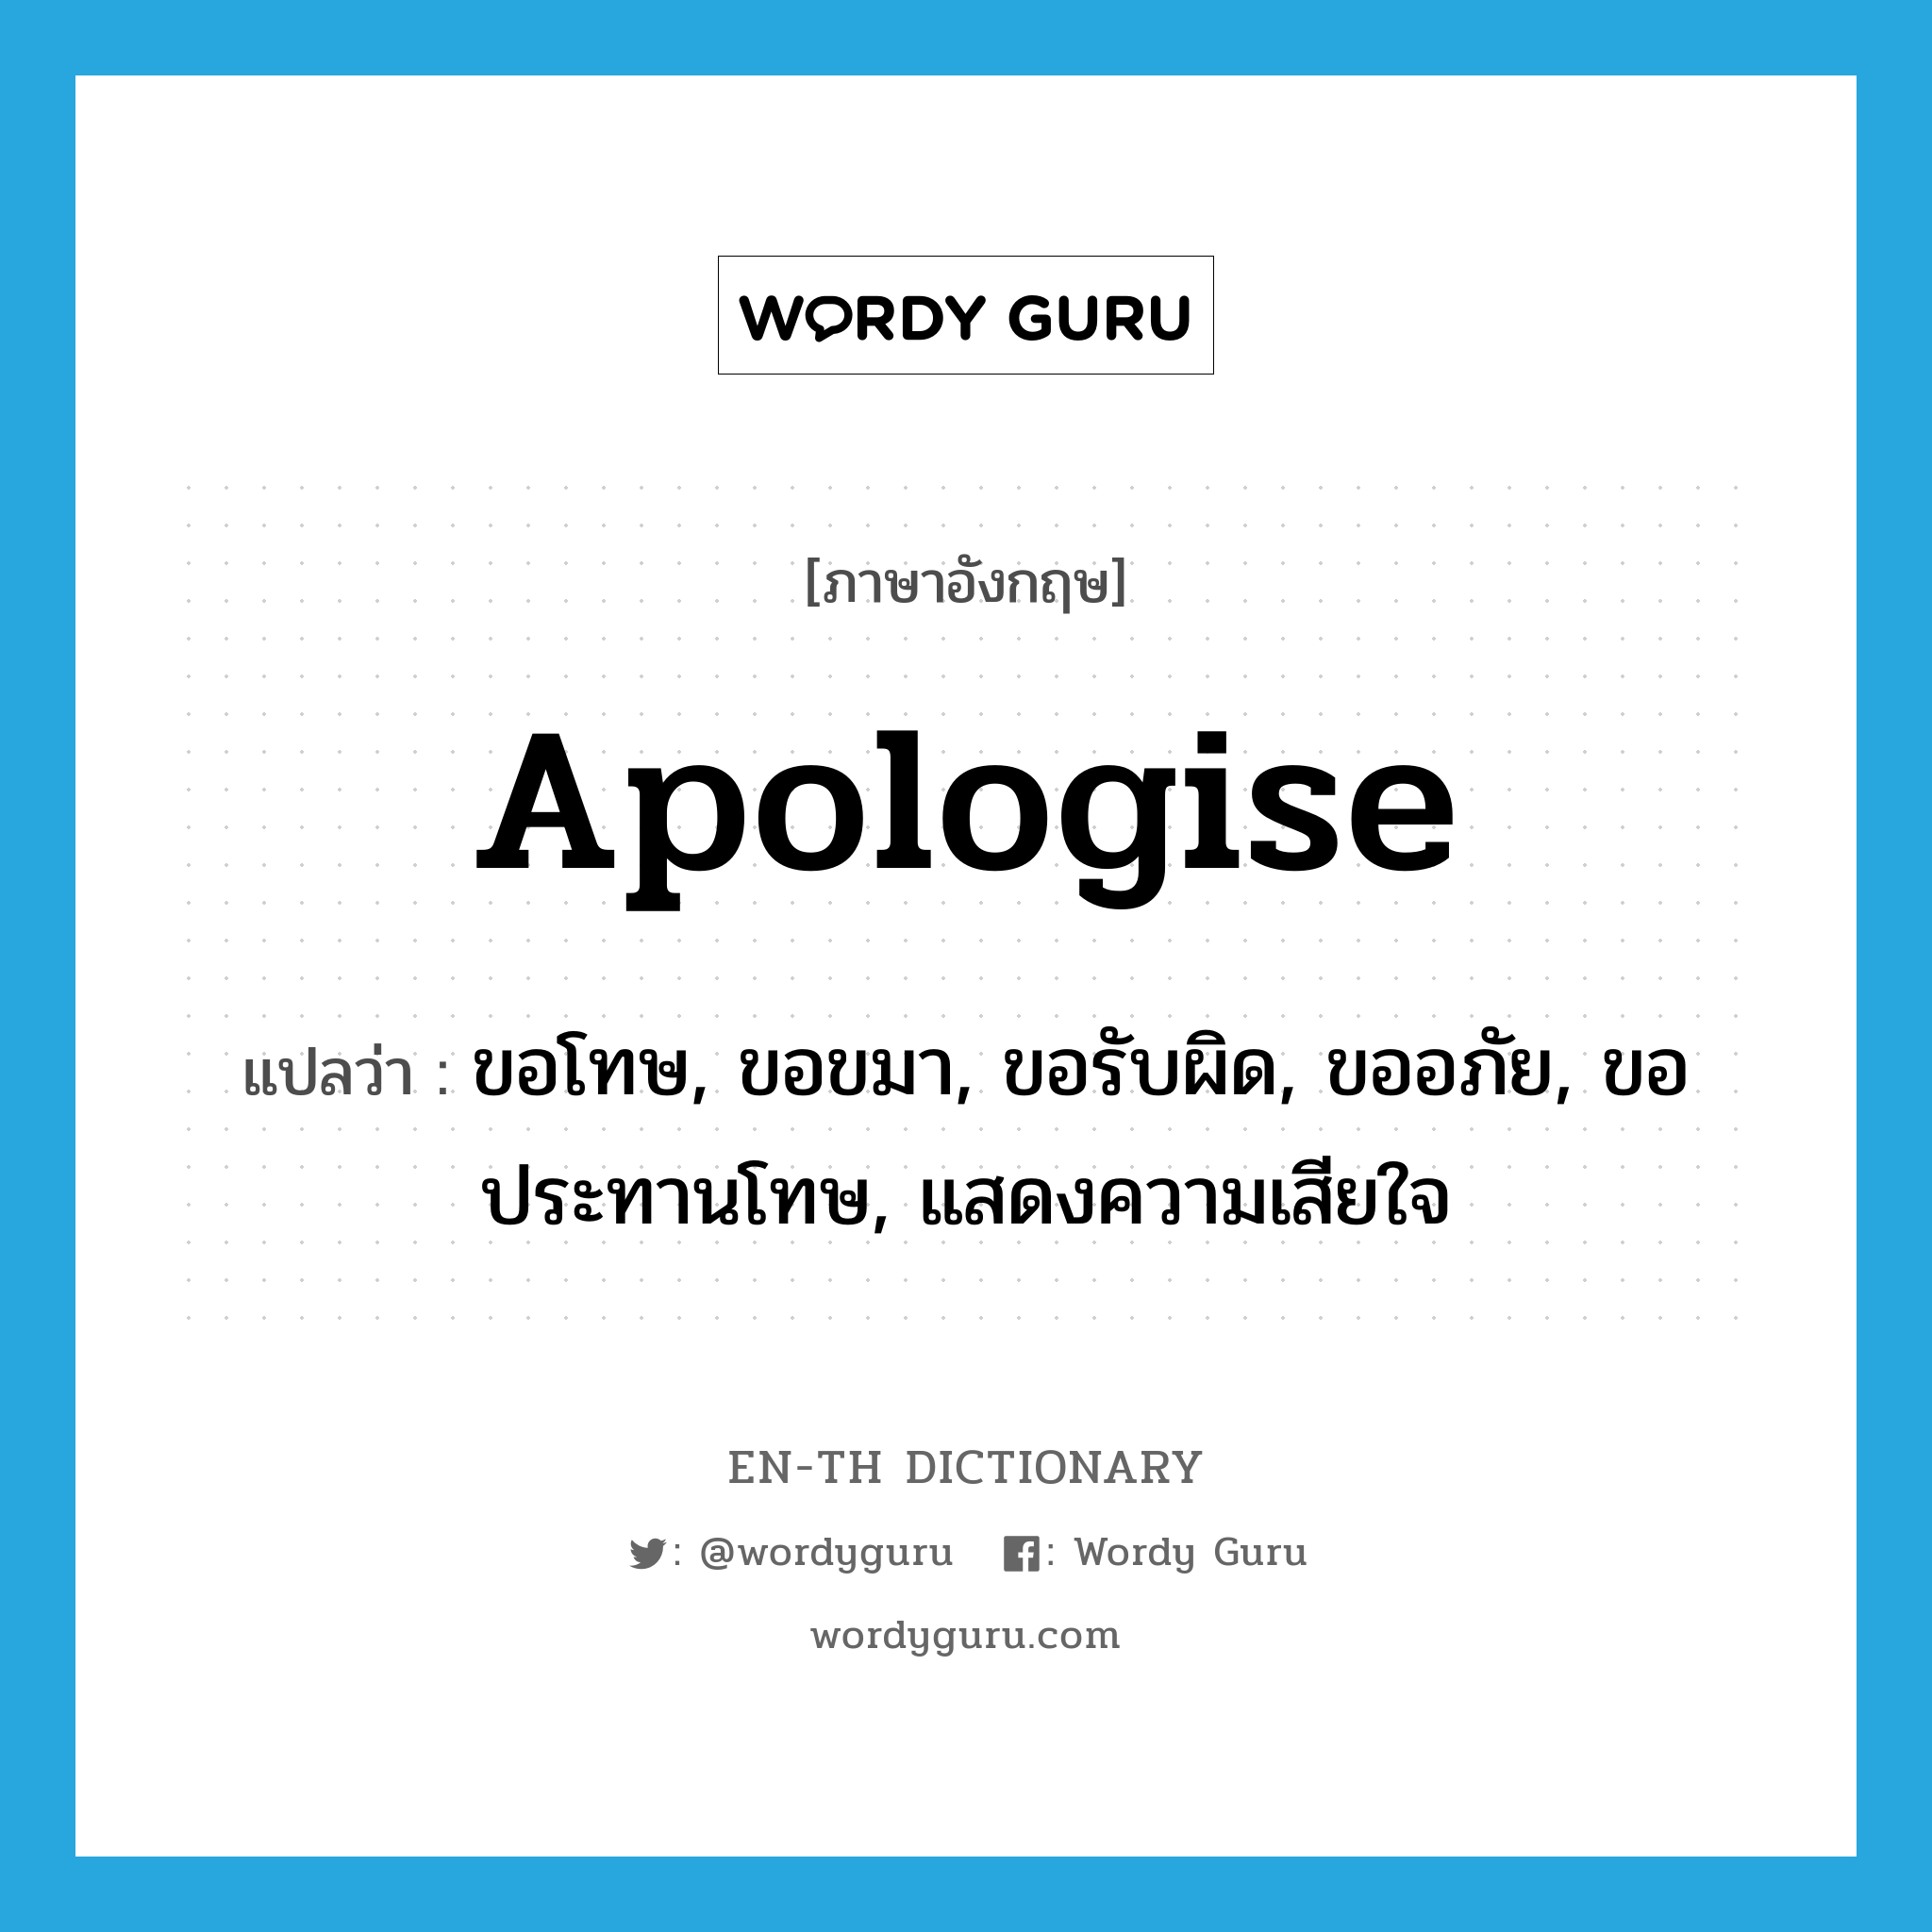 ขอโทษ, ขอขมา, ขอรับผิด, ขออภัย, ขอประทานโทษ, แสดงความเสียใจ ภาษาอังกฤษ?, คำศัพท์ภาษาอังกฤษ ขอโทษ, ขอขมา, ขอรับผิด, ขออภัย, ขอประทานโทษ, แสดงความเสียใจ แปลว่า apologise ประเภท VT หมวด VT